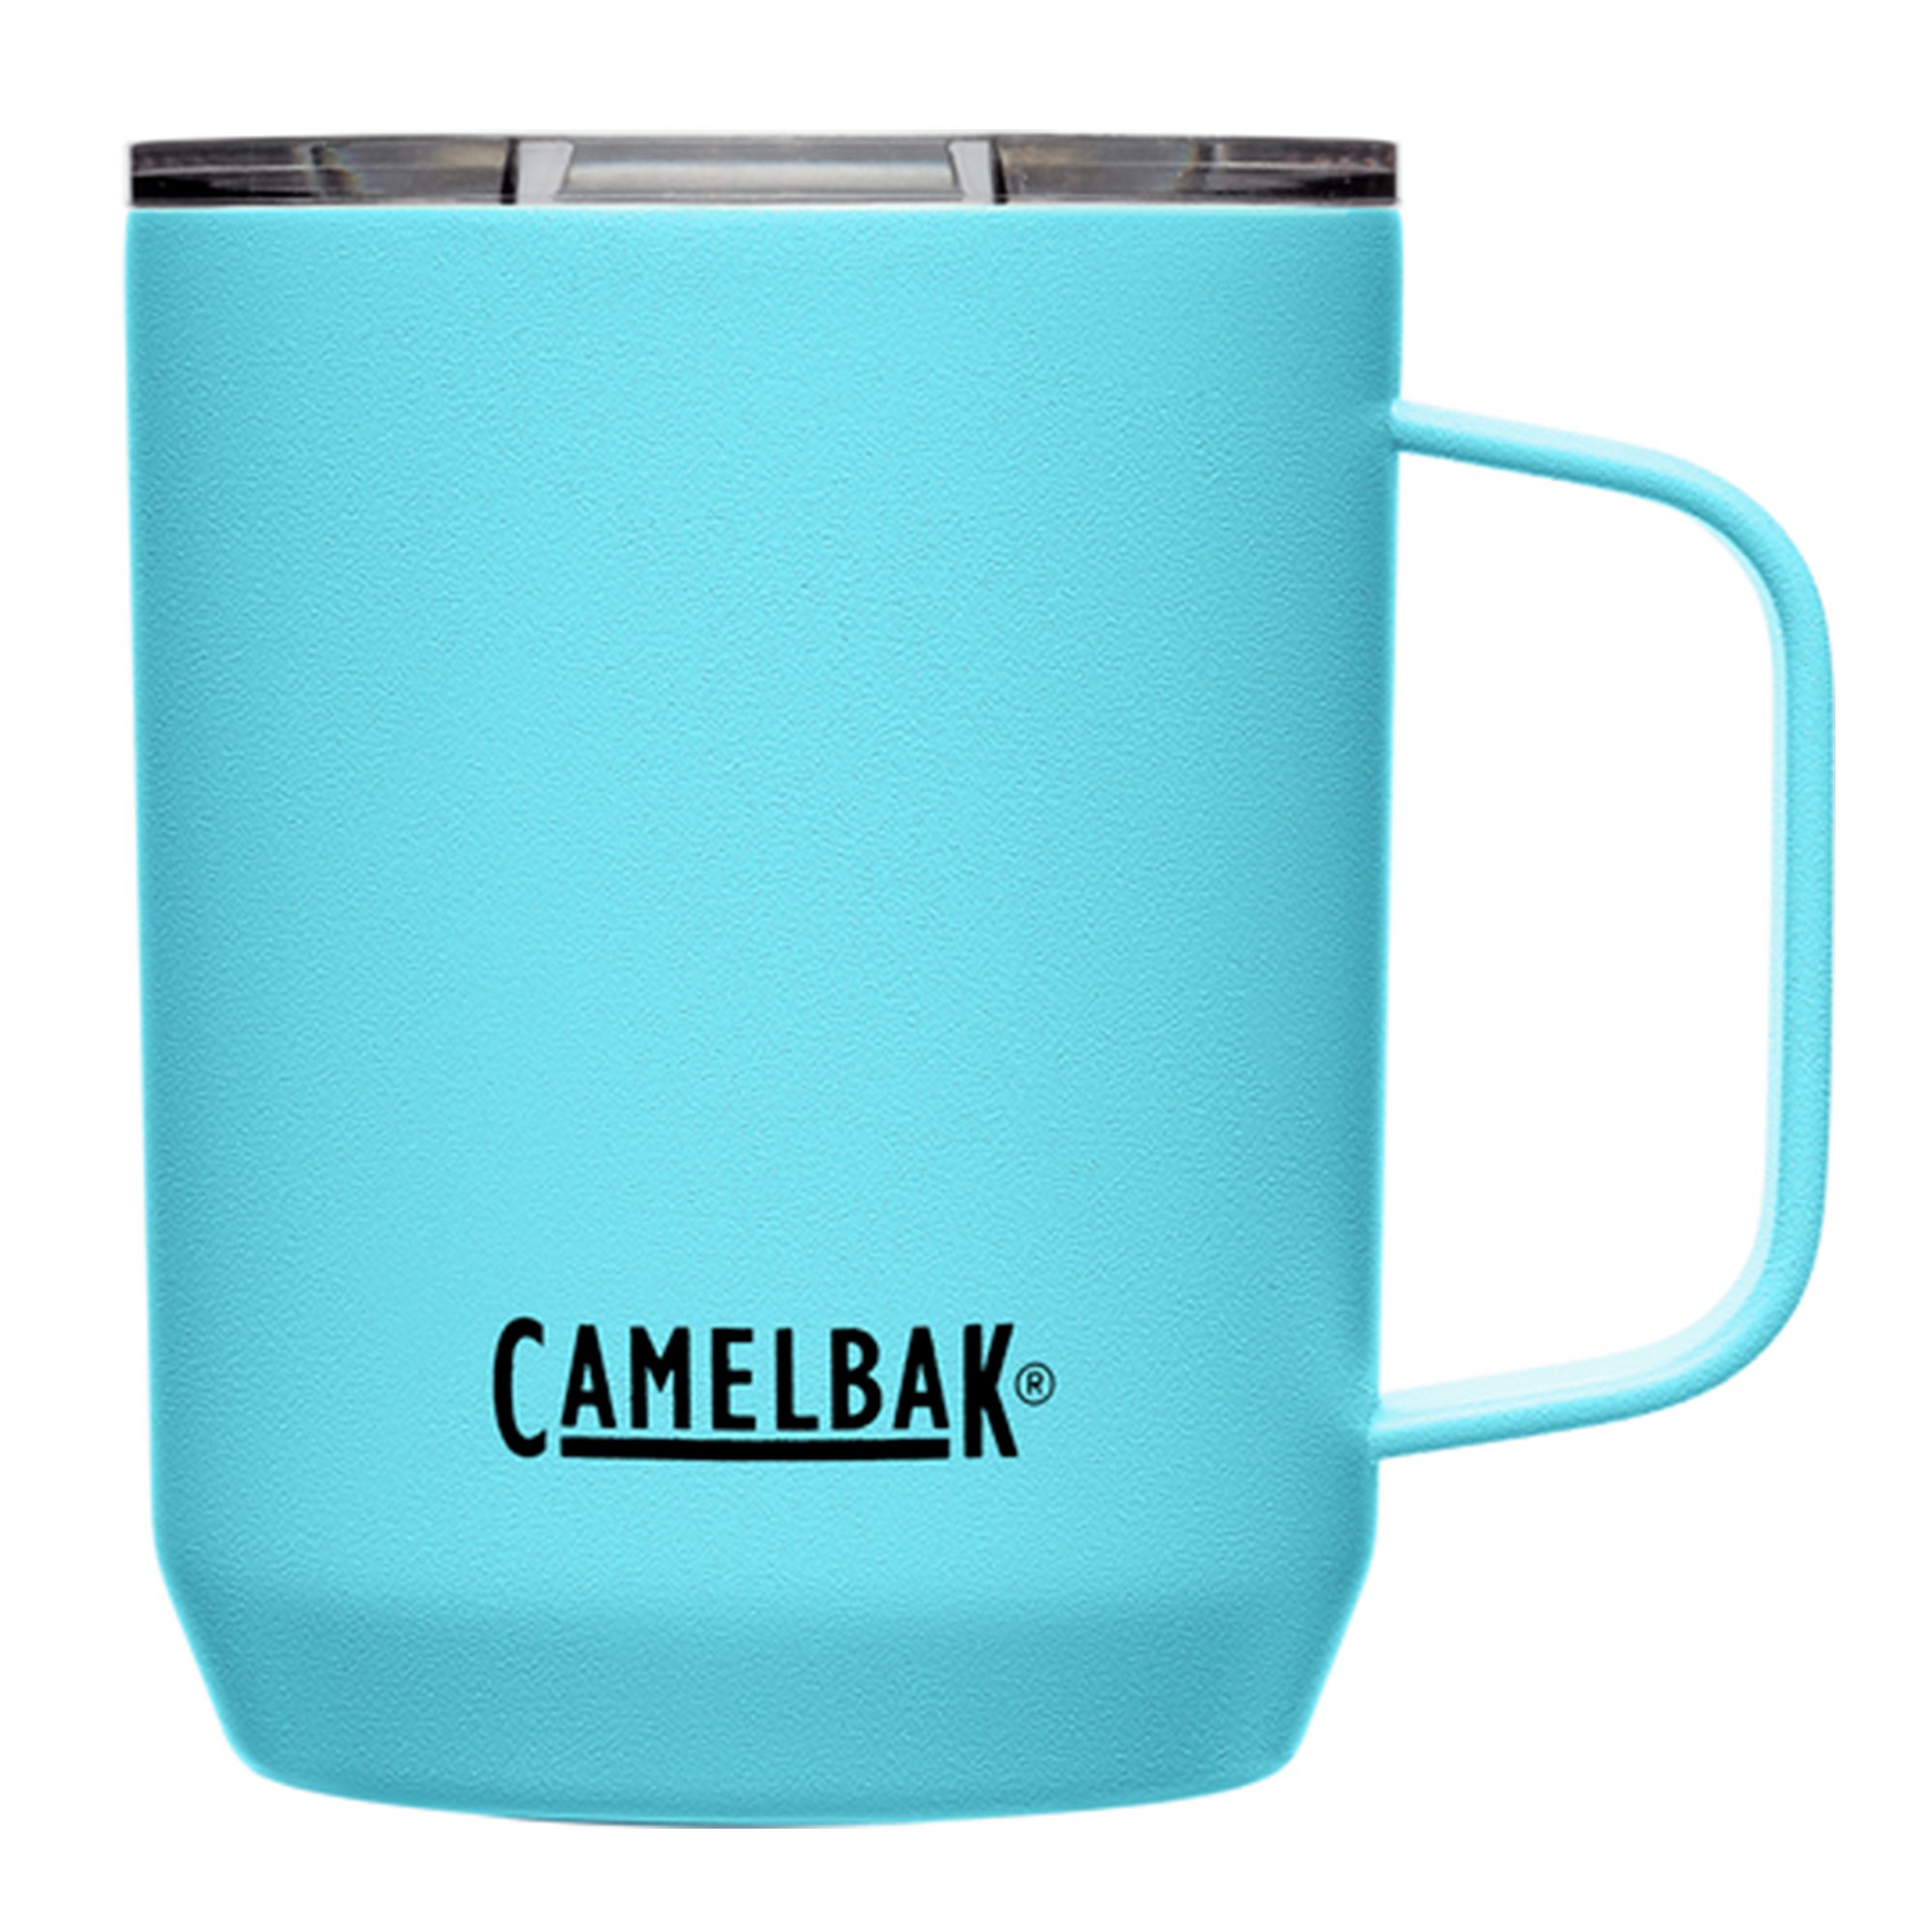 Camelbak Termosmugg 0,35 liter nordic blue